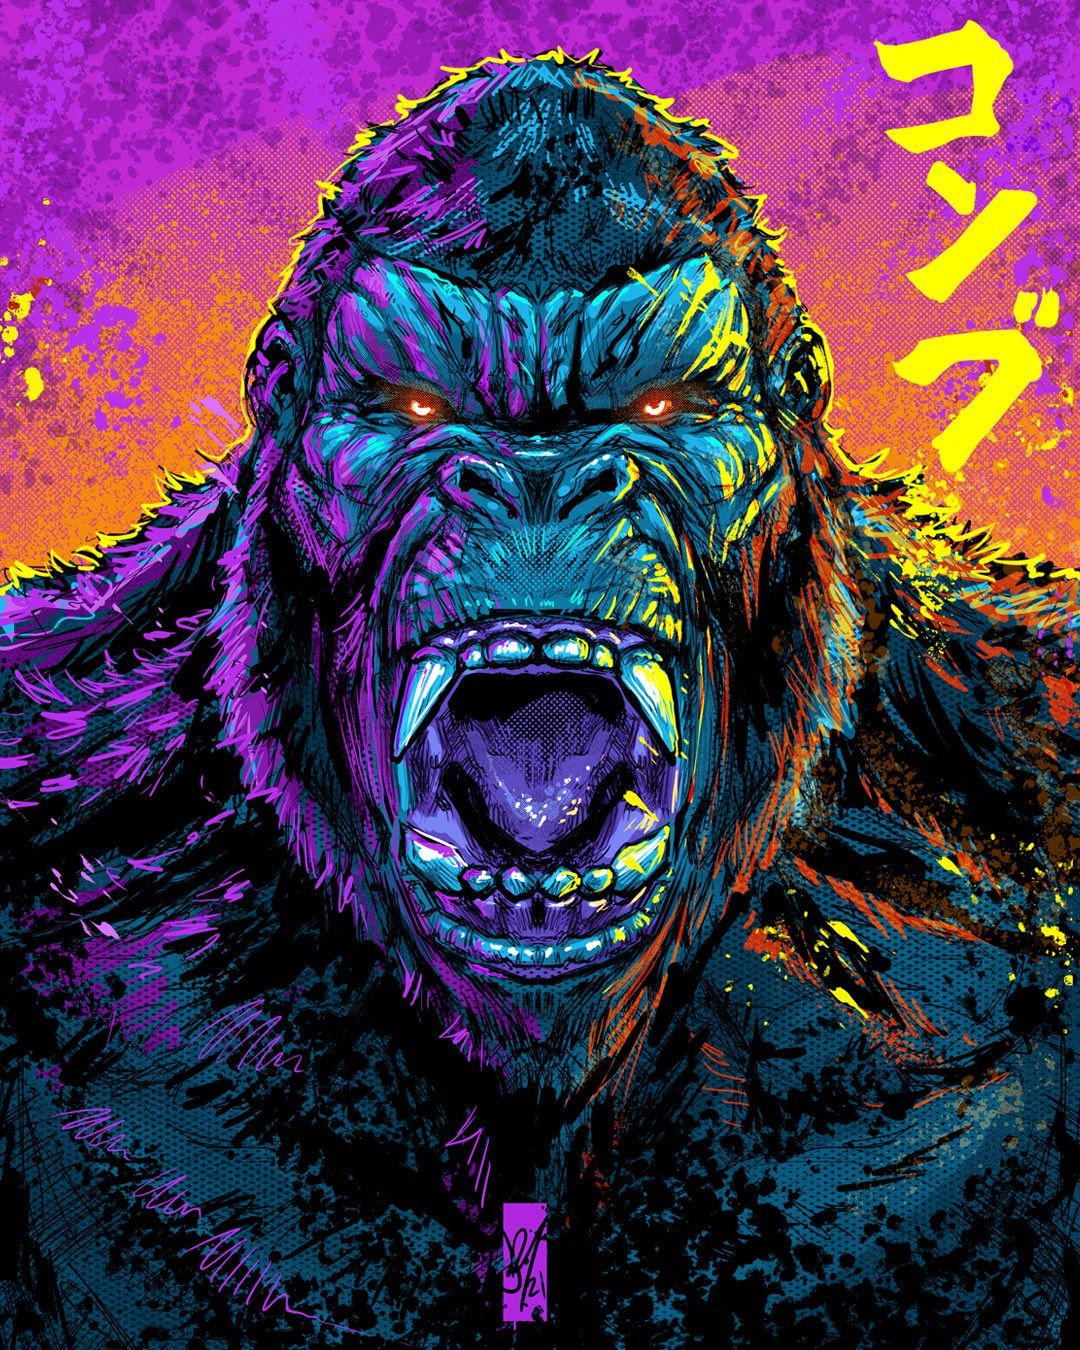 King Kong Vs Godzilla Artwork Wallpapers